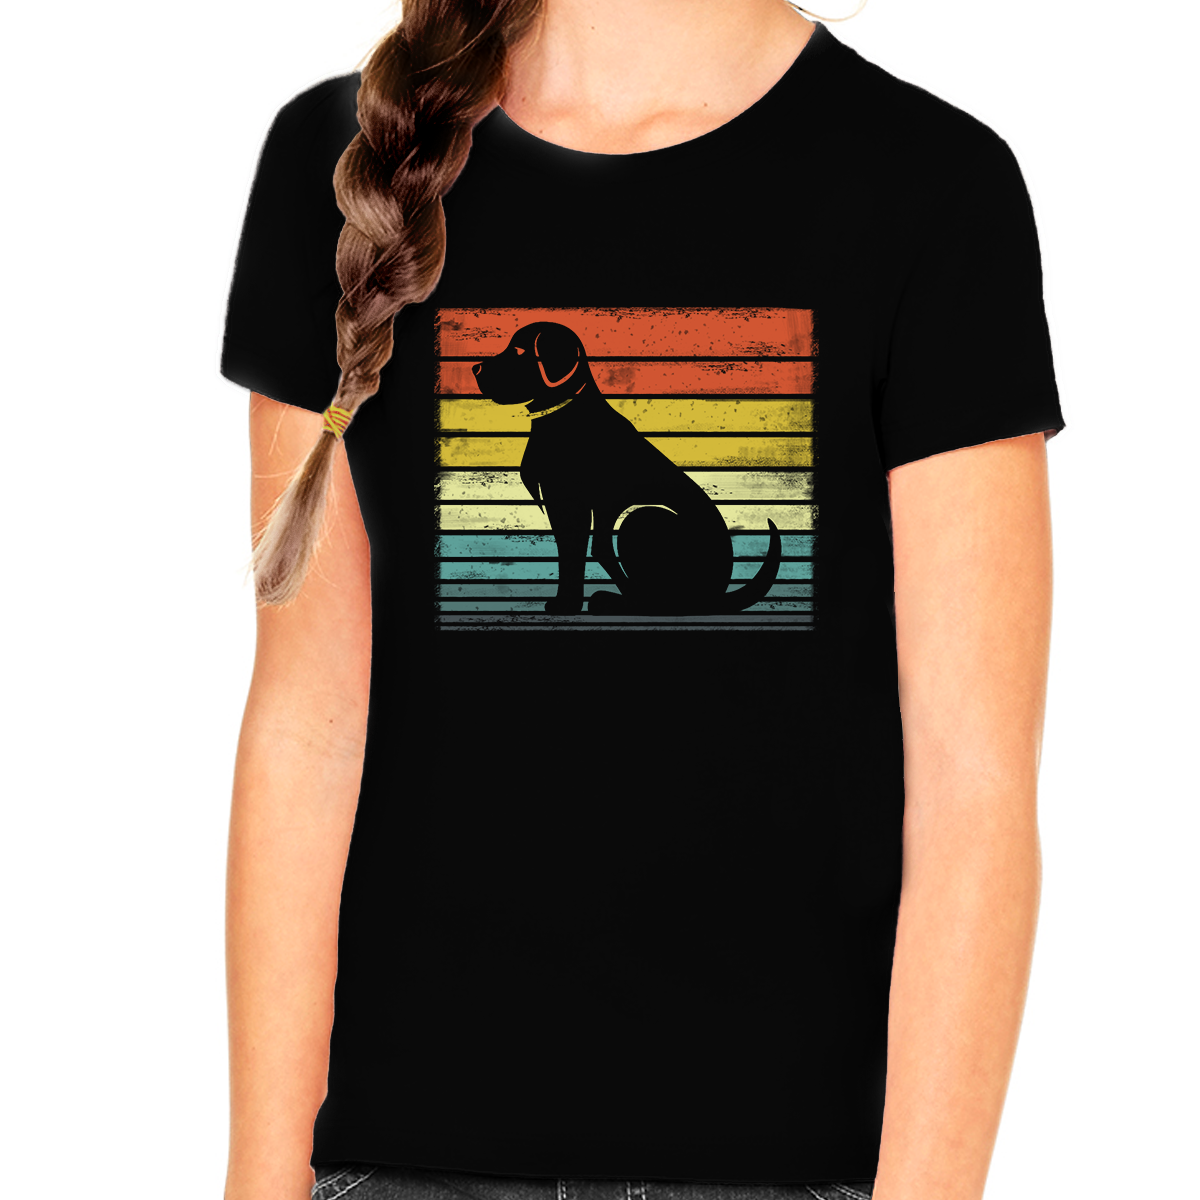 Vintage Dog Shirt - Dog Shirts for Girls - Dog Gifts for Girls - Kids Dog Lover Shirts - Fire Fit Designs